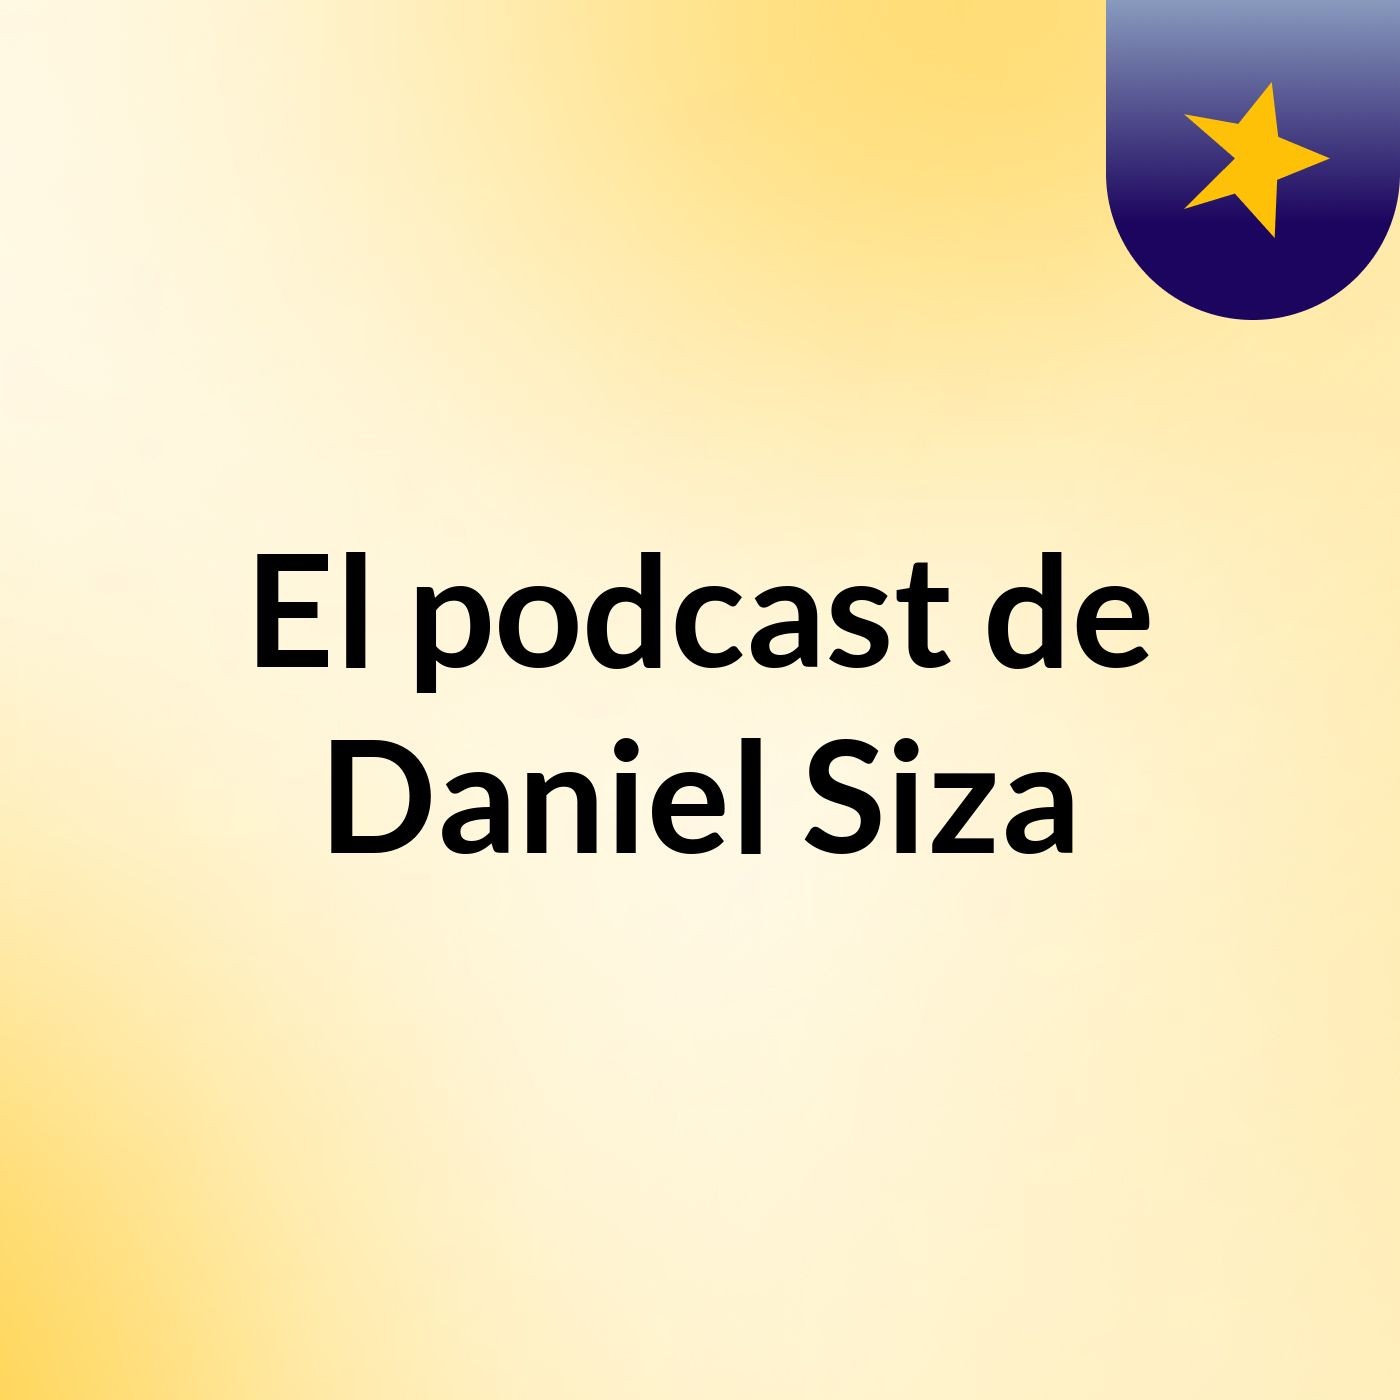 El podcast de Daniel Siza